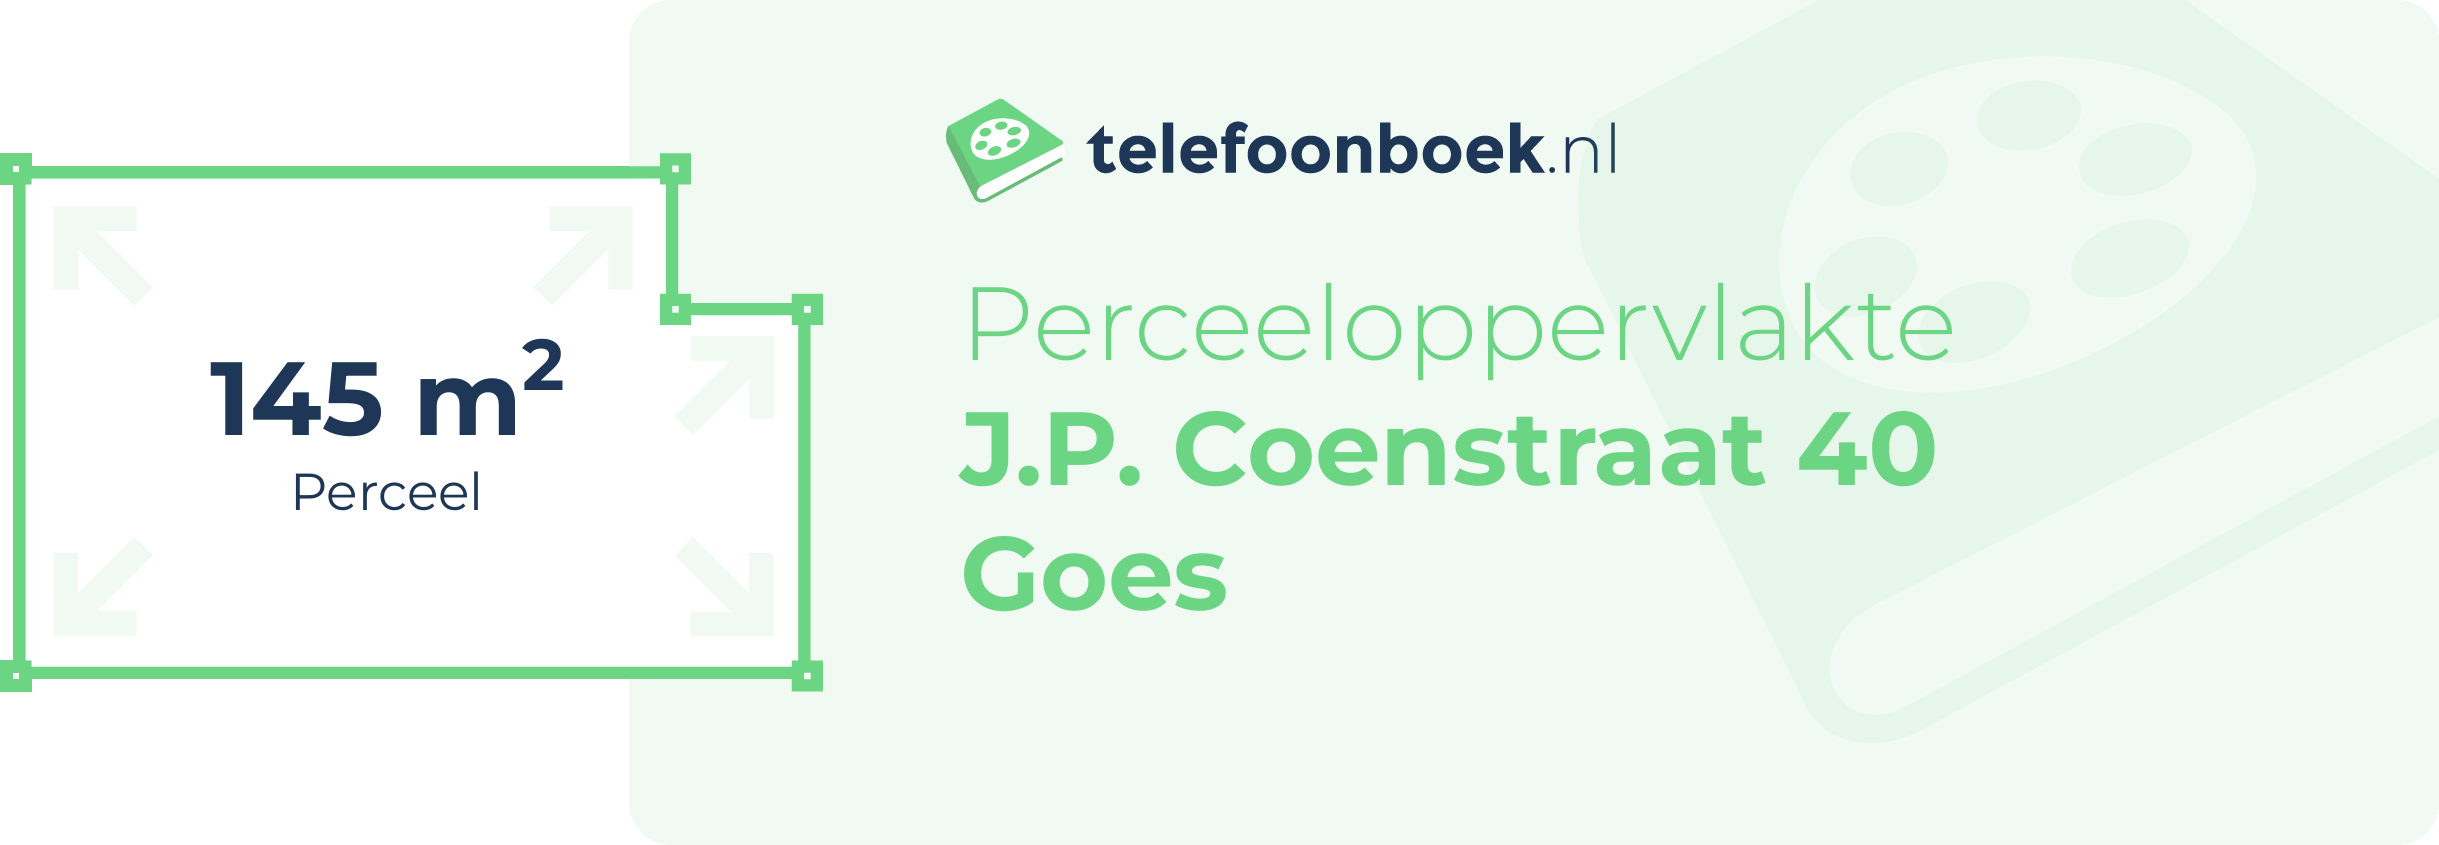 Perceeloppervlakte J.P. Coenstraat 40 Goes